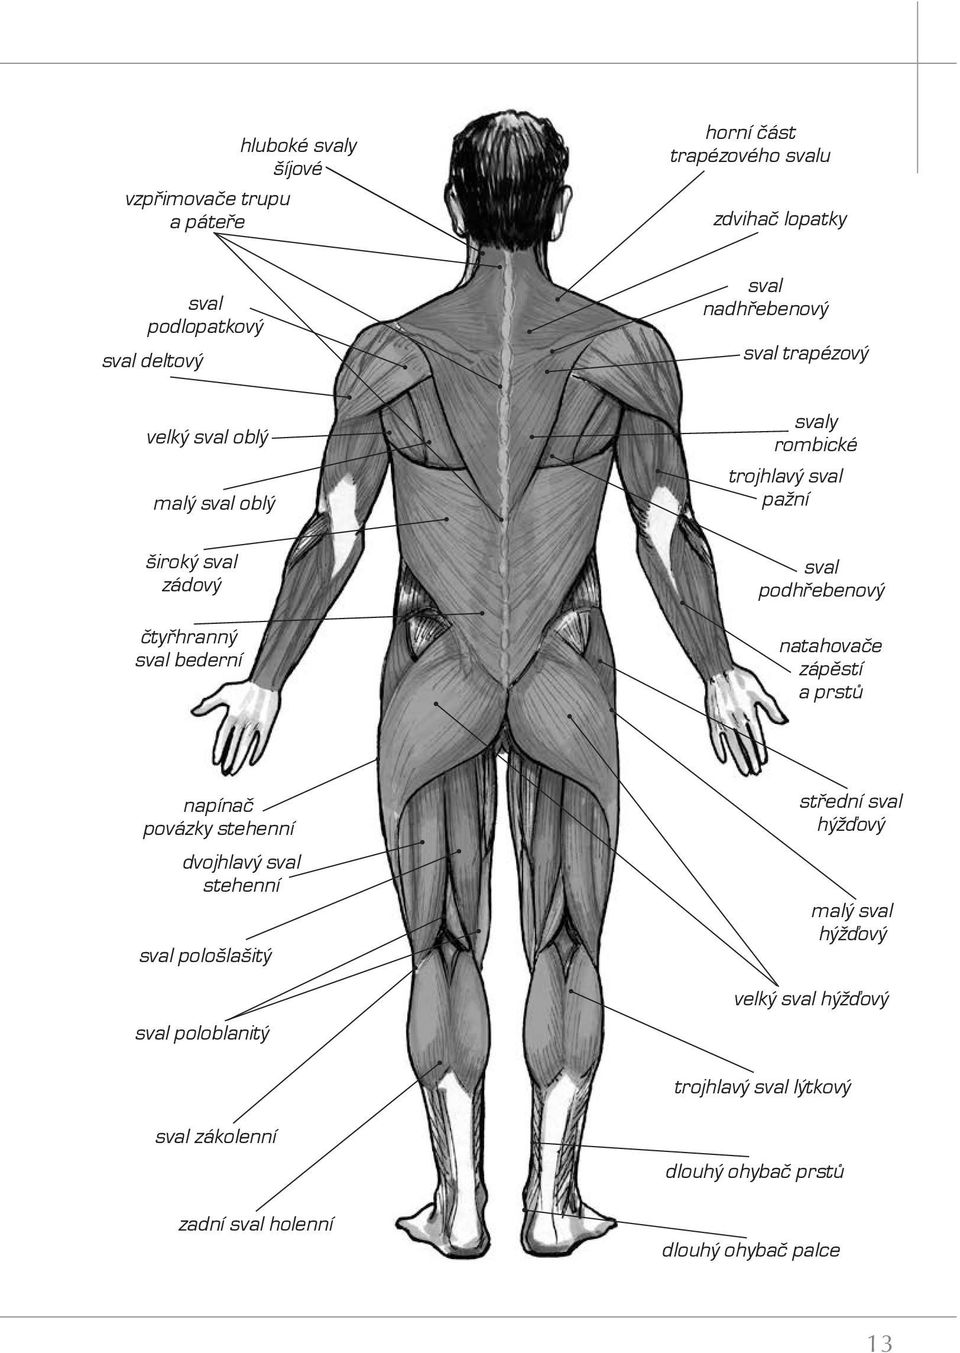 bederní sval podhřebenový natahovače zápěstí a prstů napínač povázky stehenní dvojhlavý sval stehenní sval pološlašitý sval poloblanitý střední